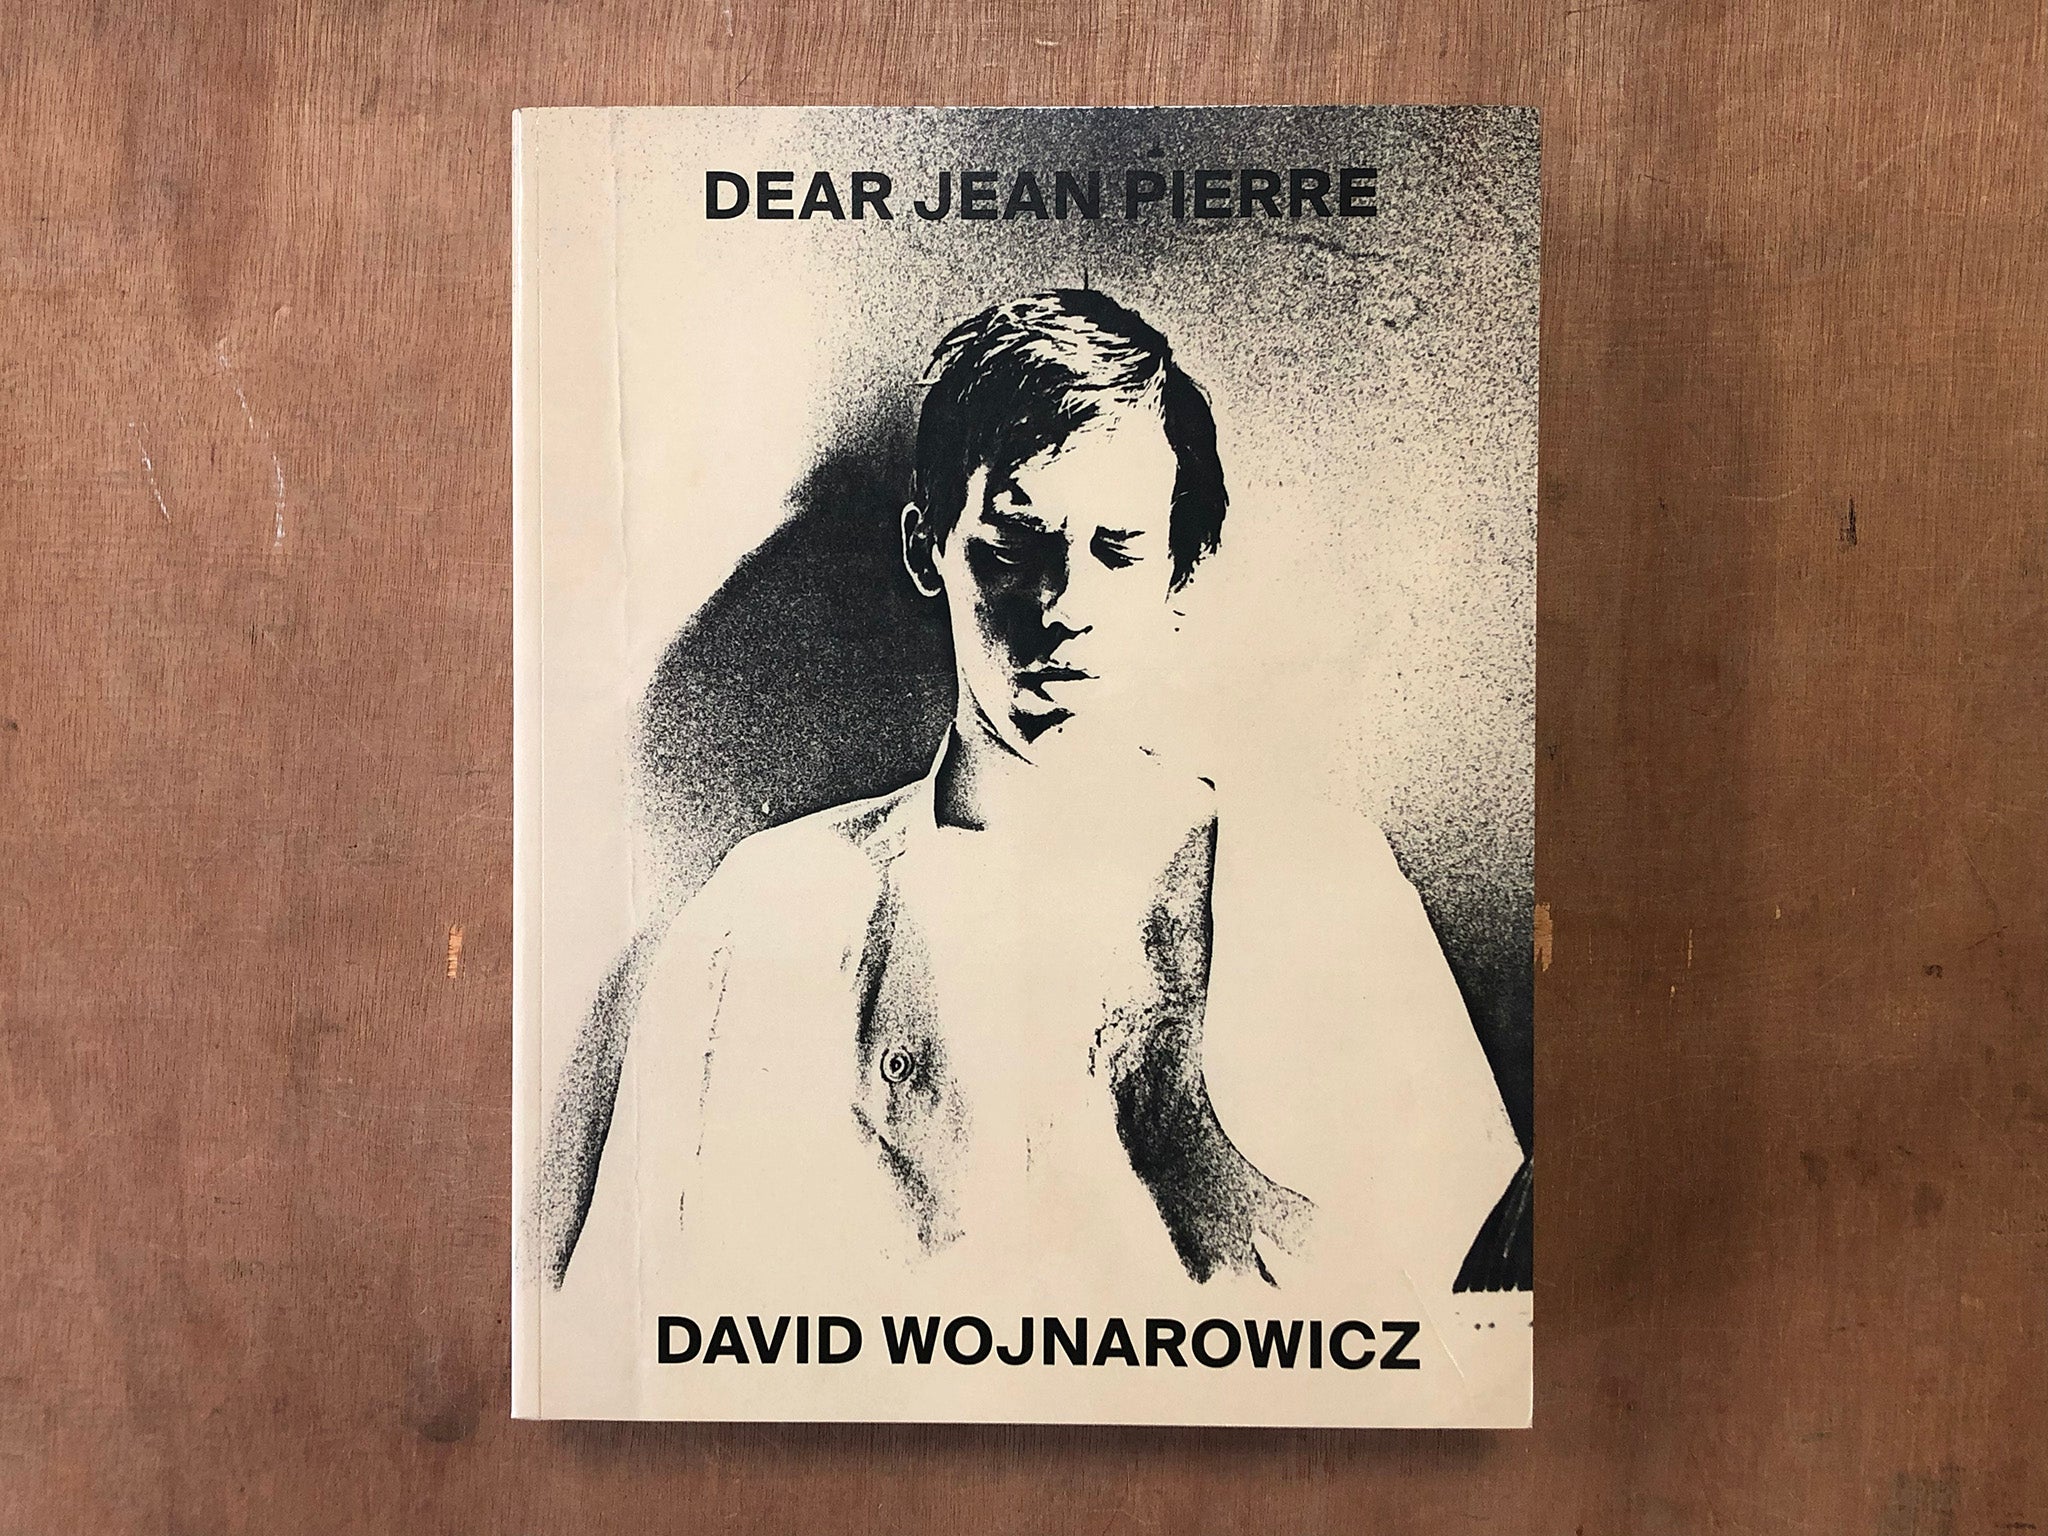 DEAR JEAN PIERRE by David Wojnarowicz